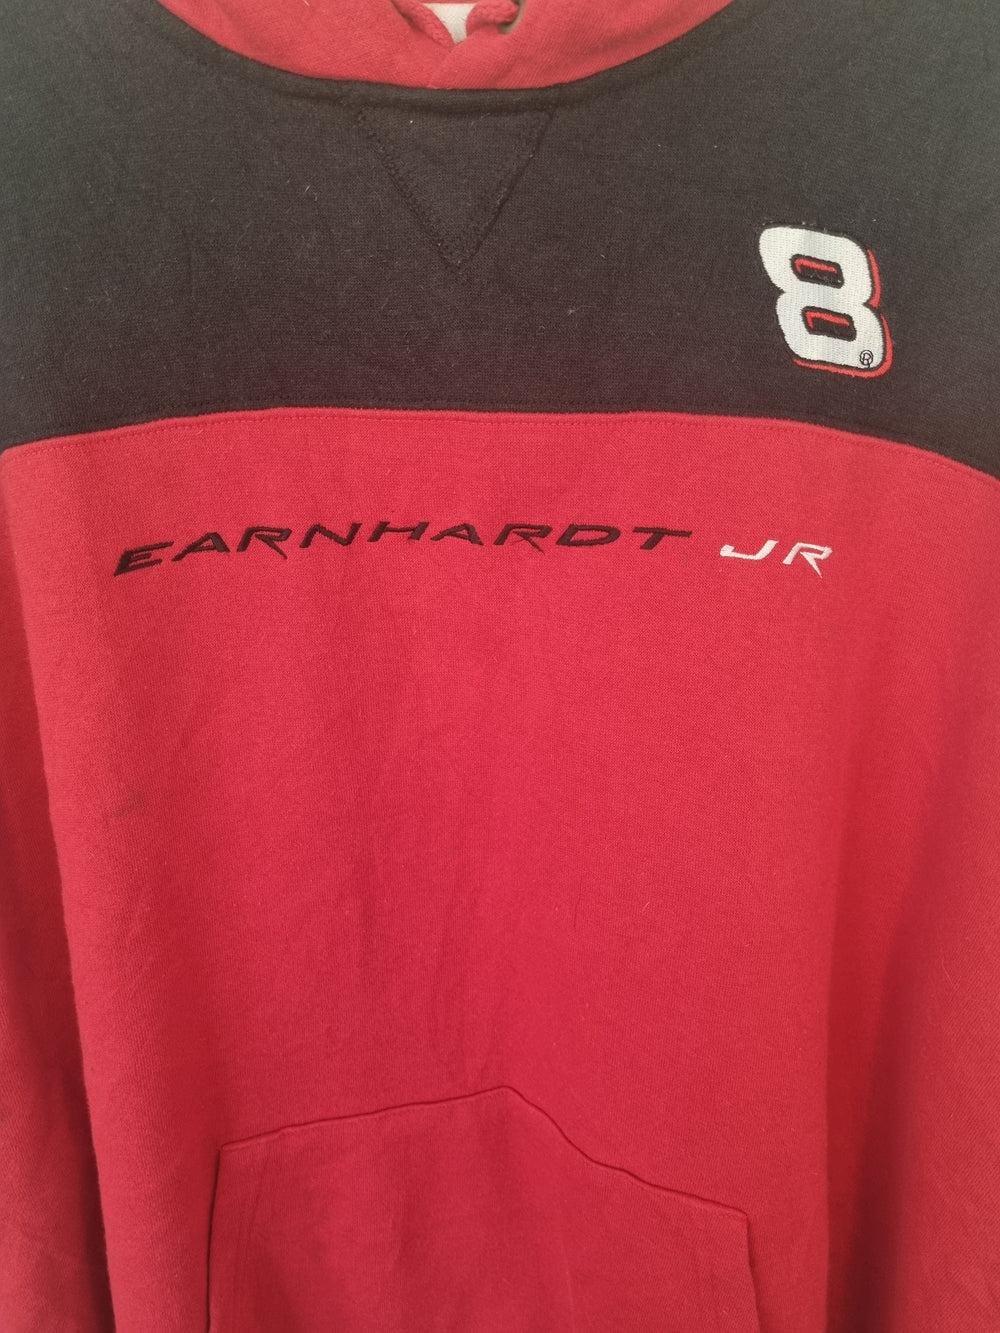 Earnhardt JR No 8 Racing XL